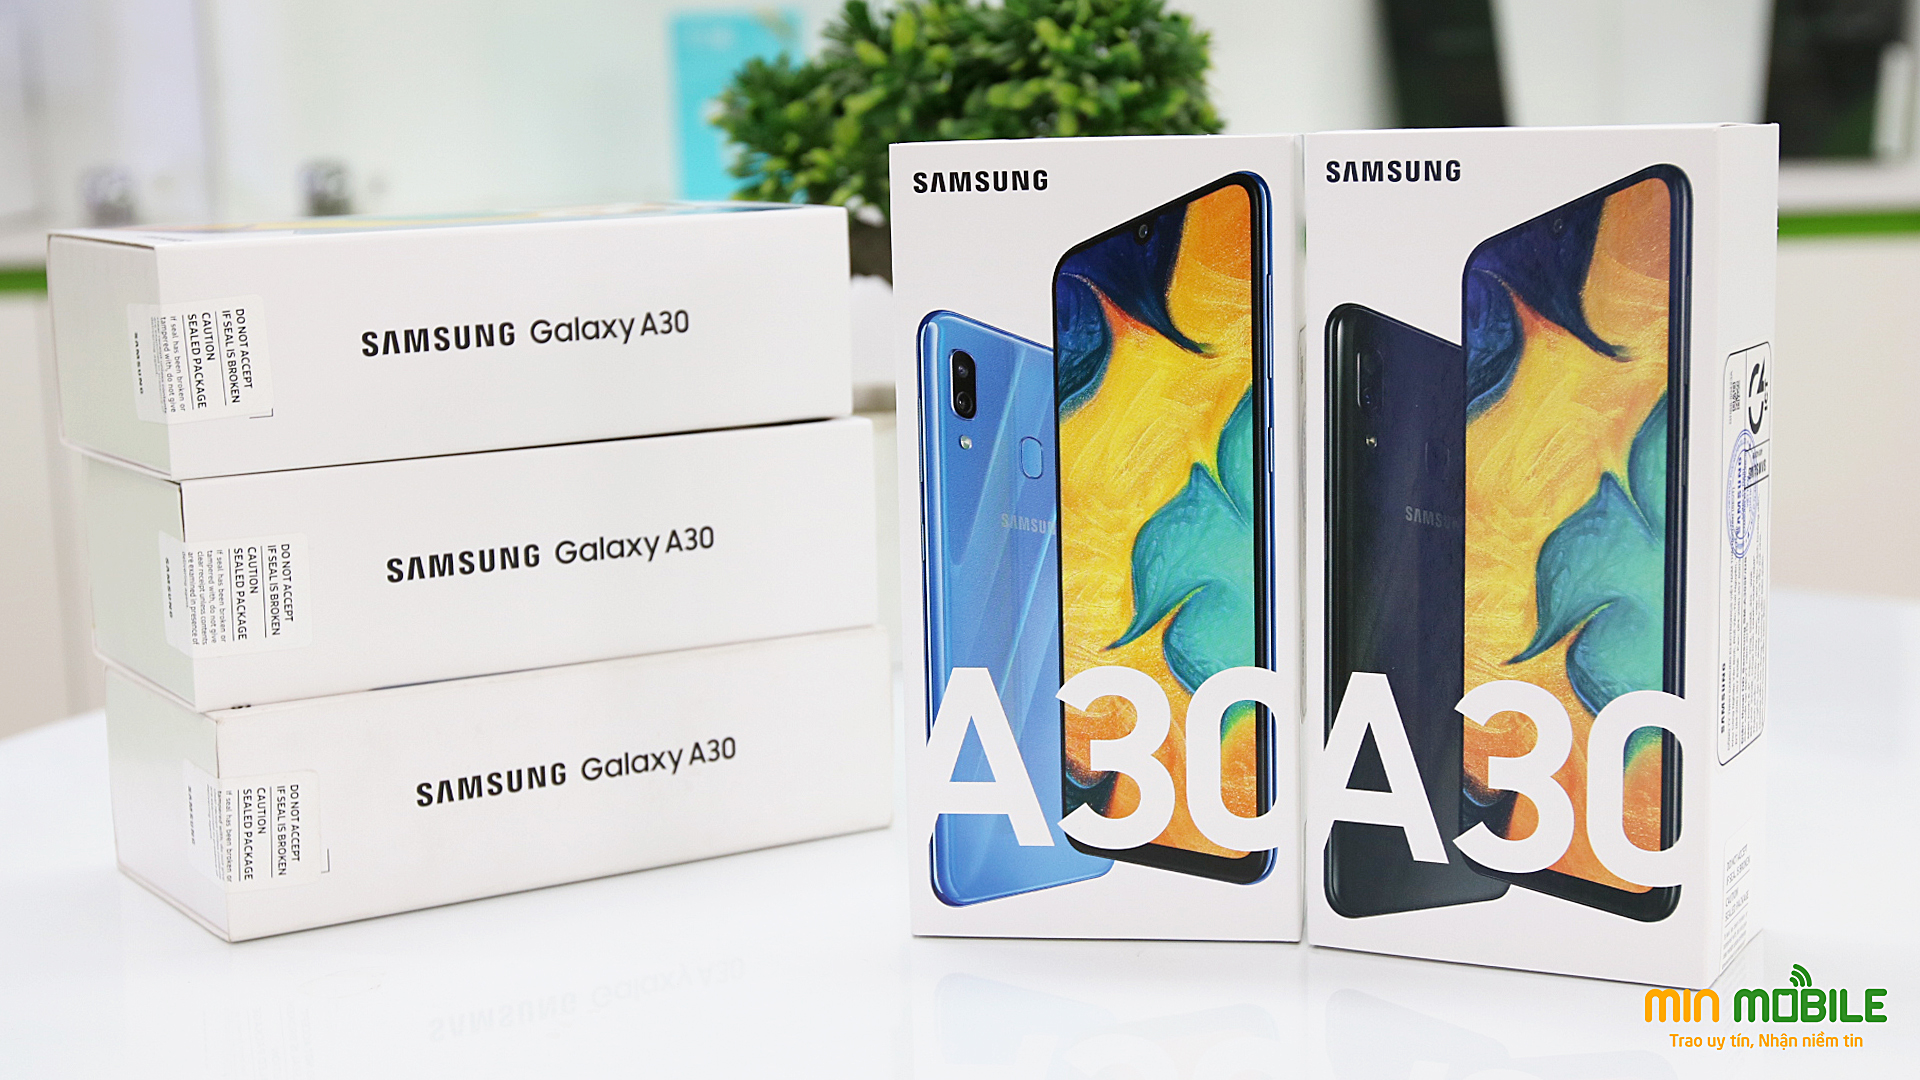 Nên mua Samsung Galaxy M20 hay Galaxy A30? - Xã Hội Thông Tin